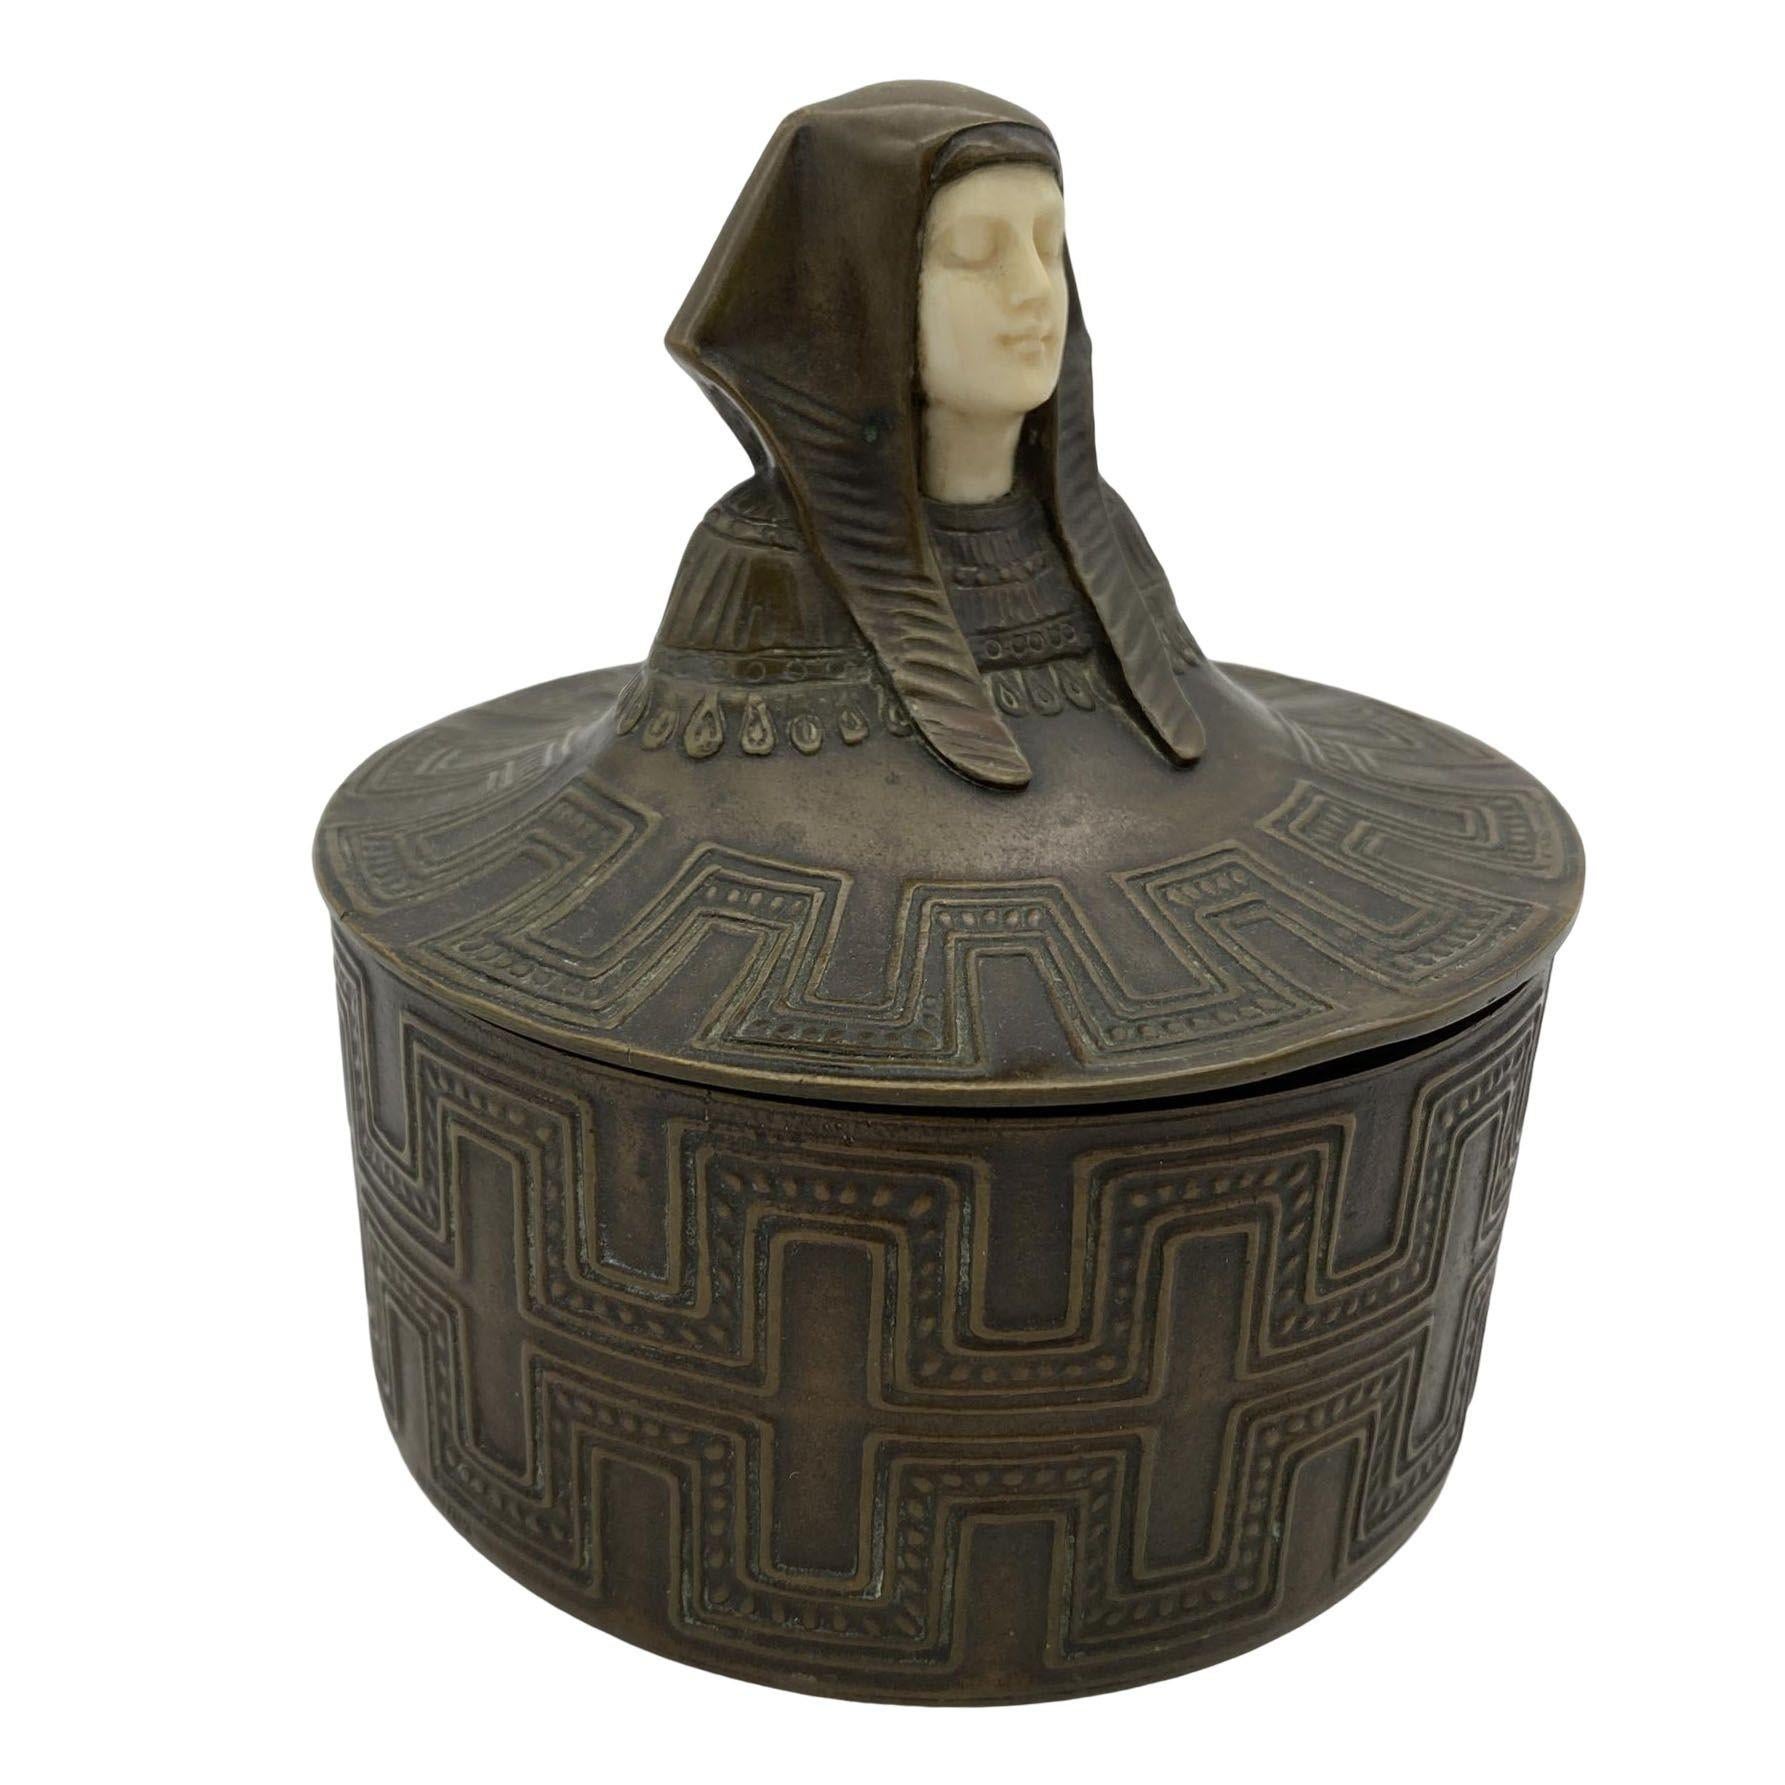 Tauchen Sie ein in die Opulenz der ursprünglichen Art-Déco-Ära mit diesem exquisiten ägyptischen Revival-Gehäuse aus Bronzeguss. Der abnehmbare Deckel ist mit einem sorgfältig geschnitzten Knochengesicht verziert und zeigt eine königliche